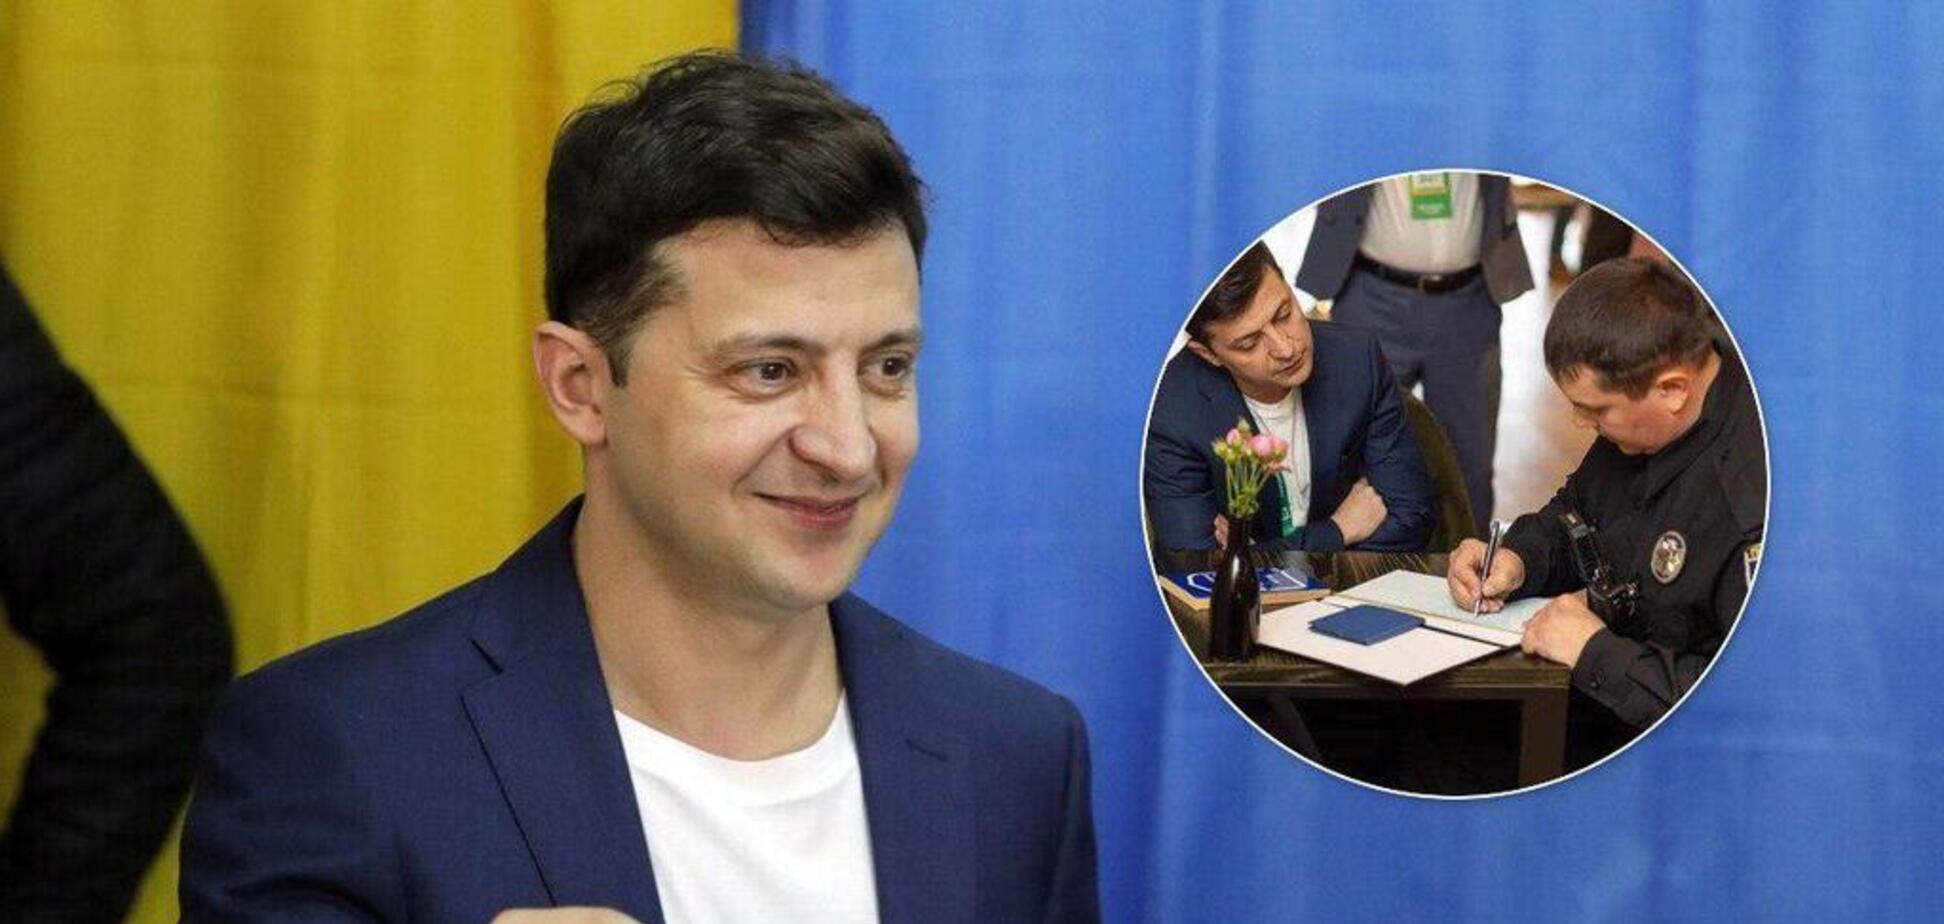 Зеленский отличился выходкой на избирательном участке: полиция отреагировала